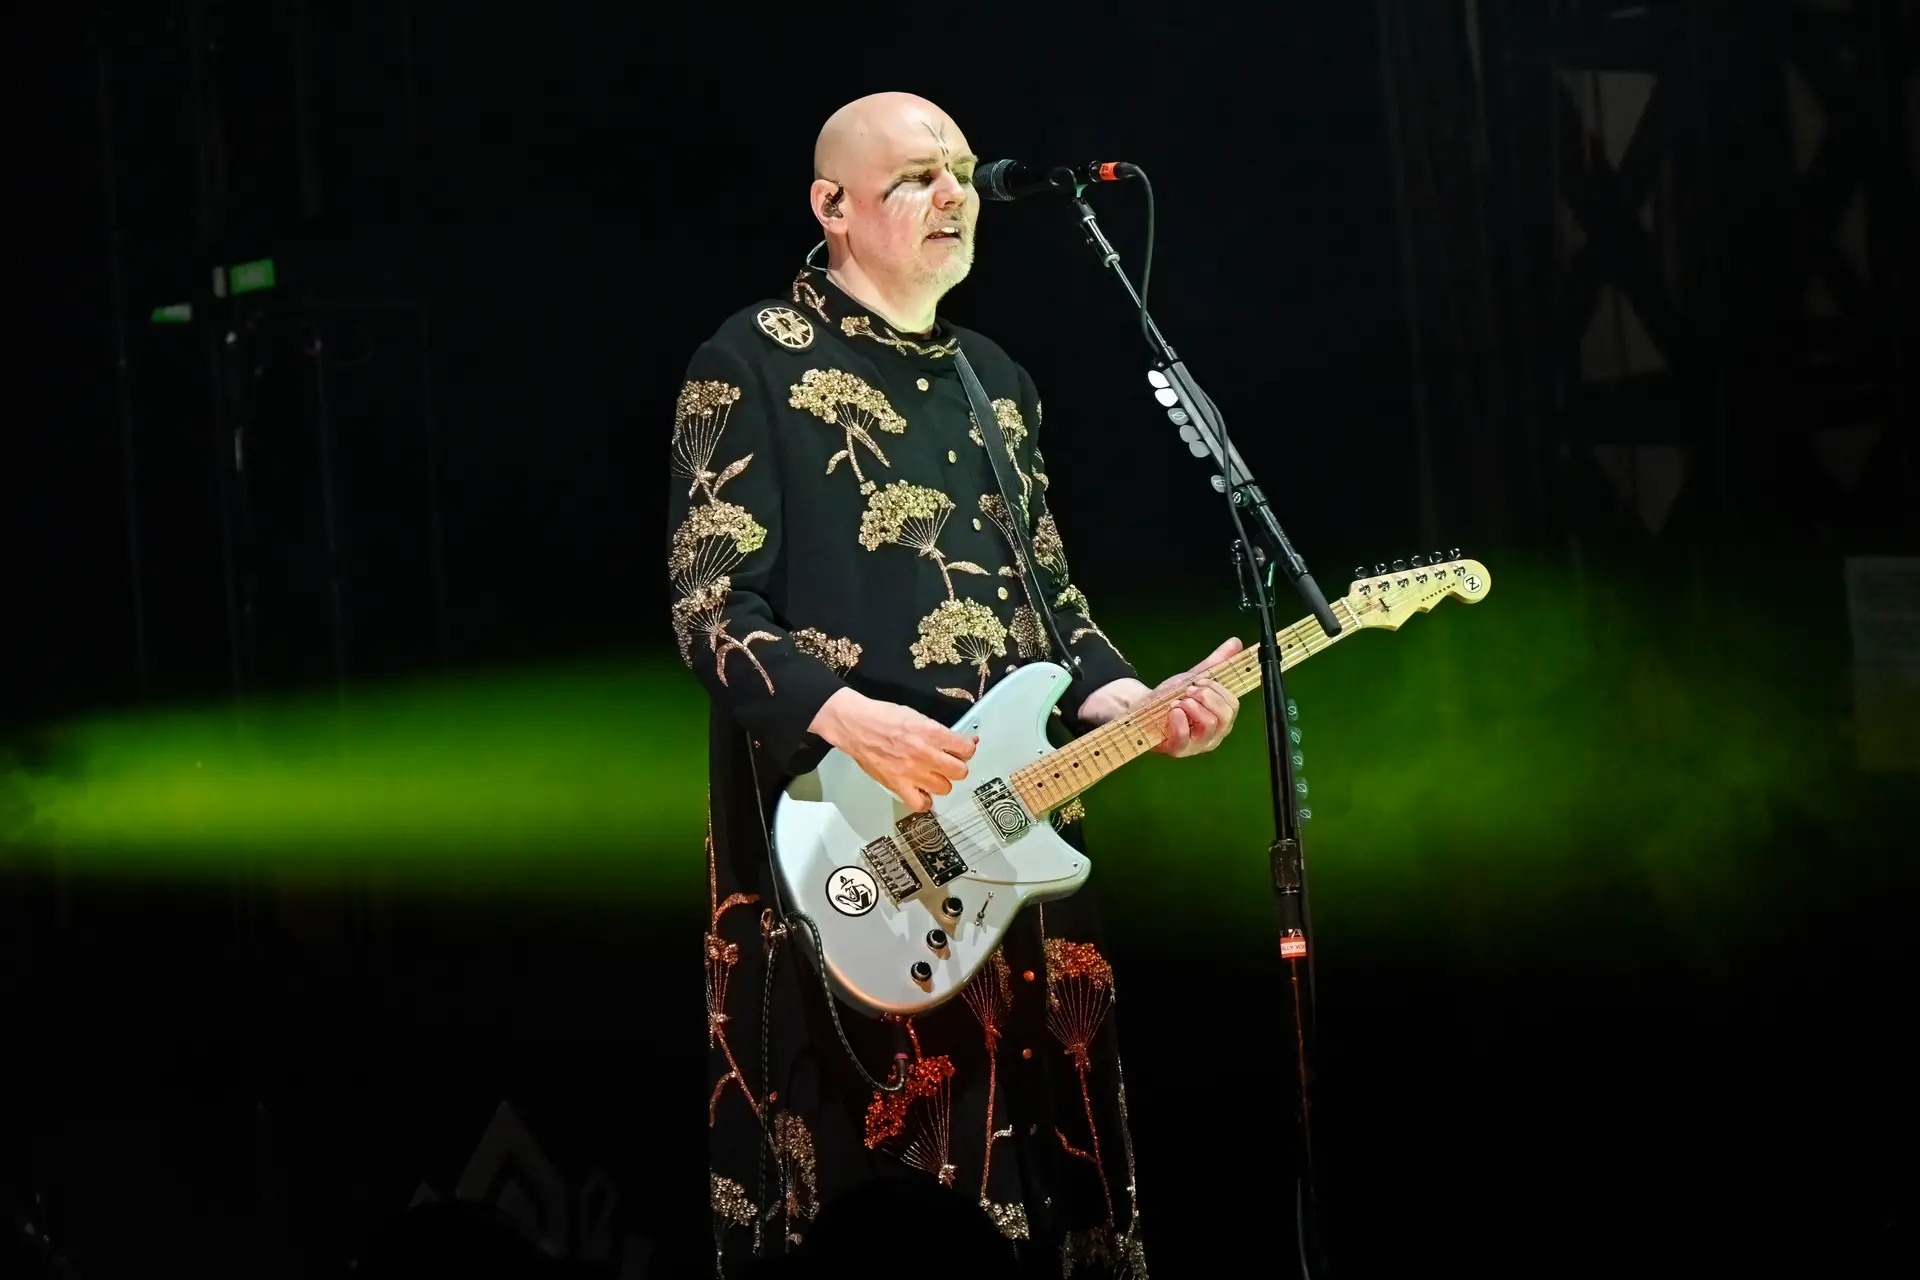 Billy Corgan mostra canção nova inspirada em tragédia ocorrida no local onde vive